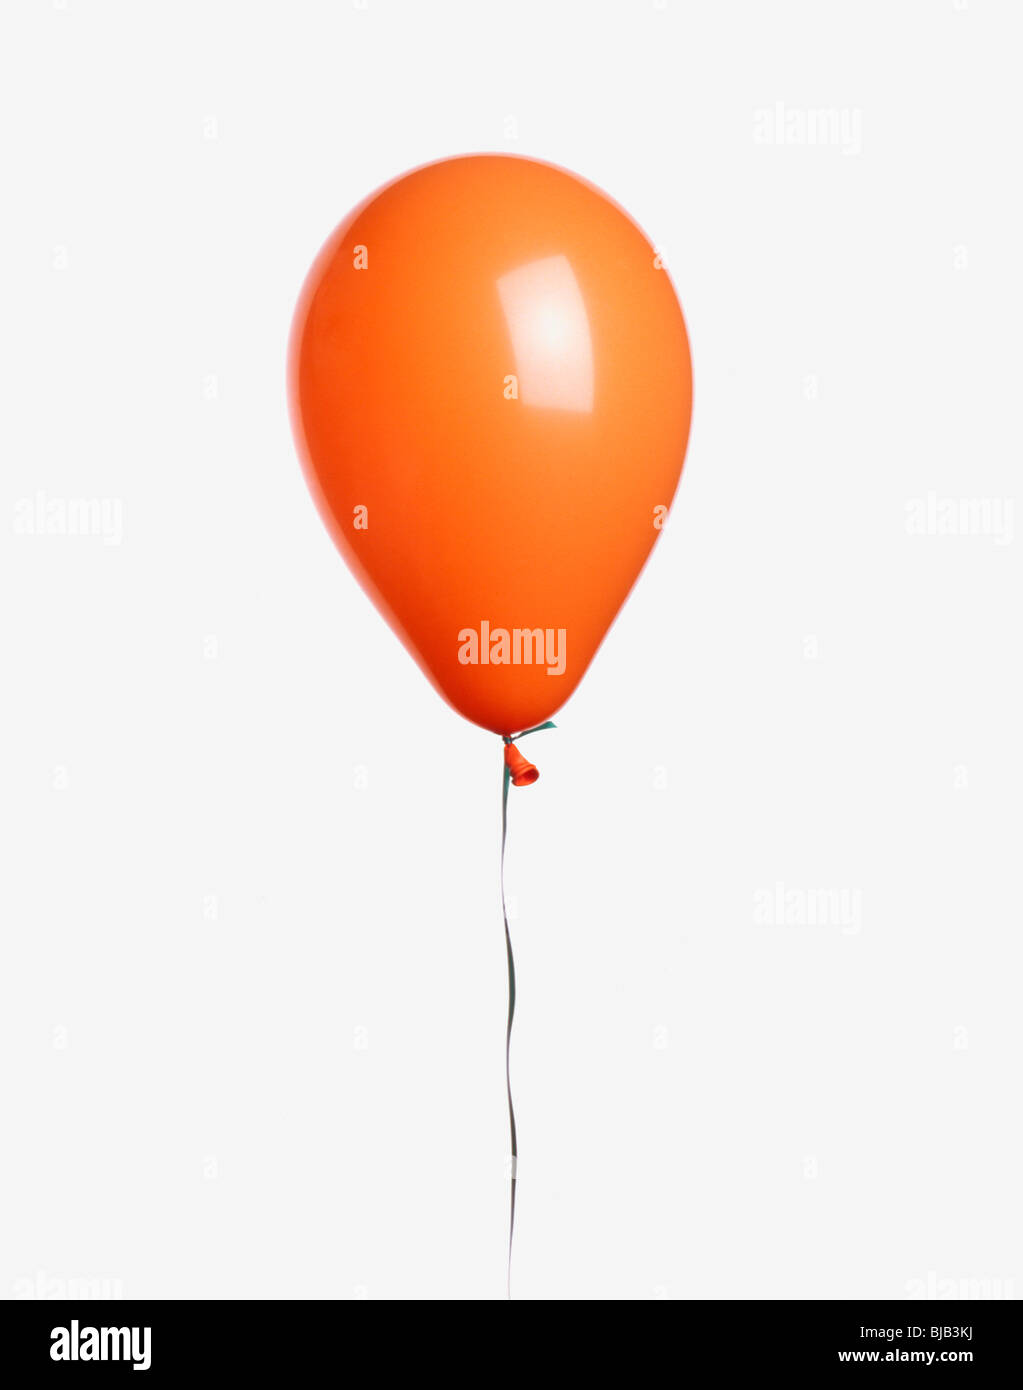 Ballon orange avec coupe-ruban sur fond blanc Banque D'Images